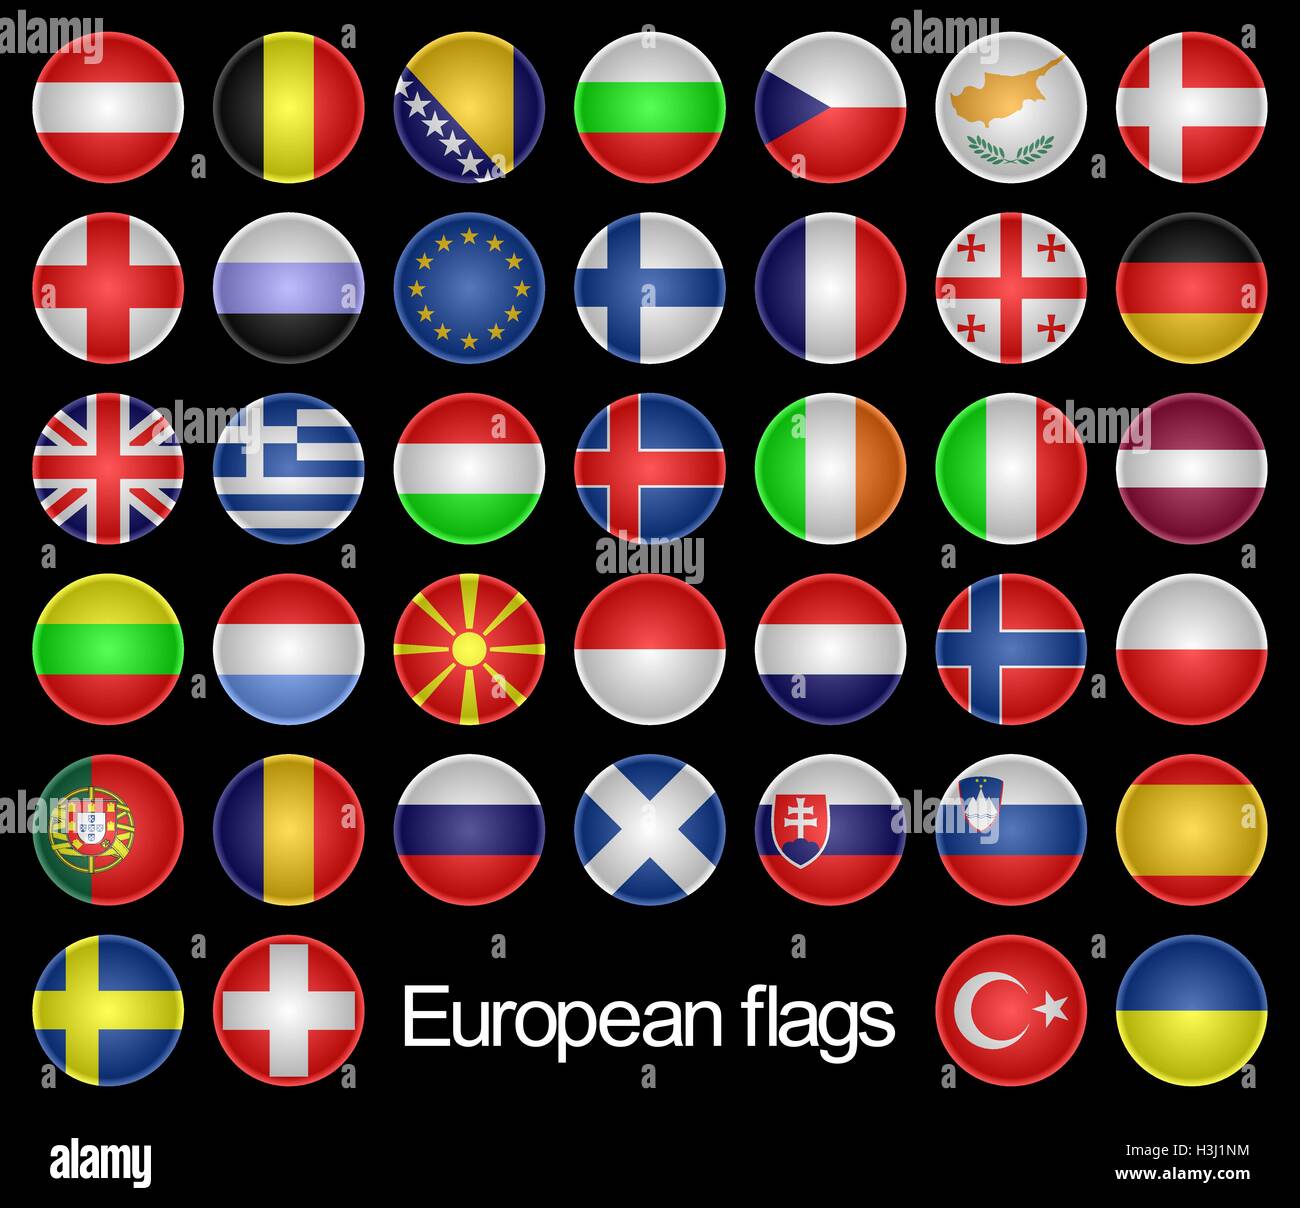 European flags. Stock Vector